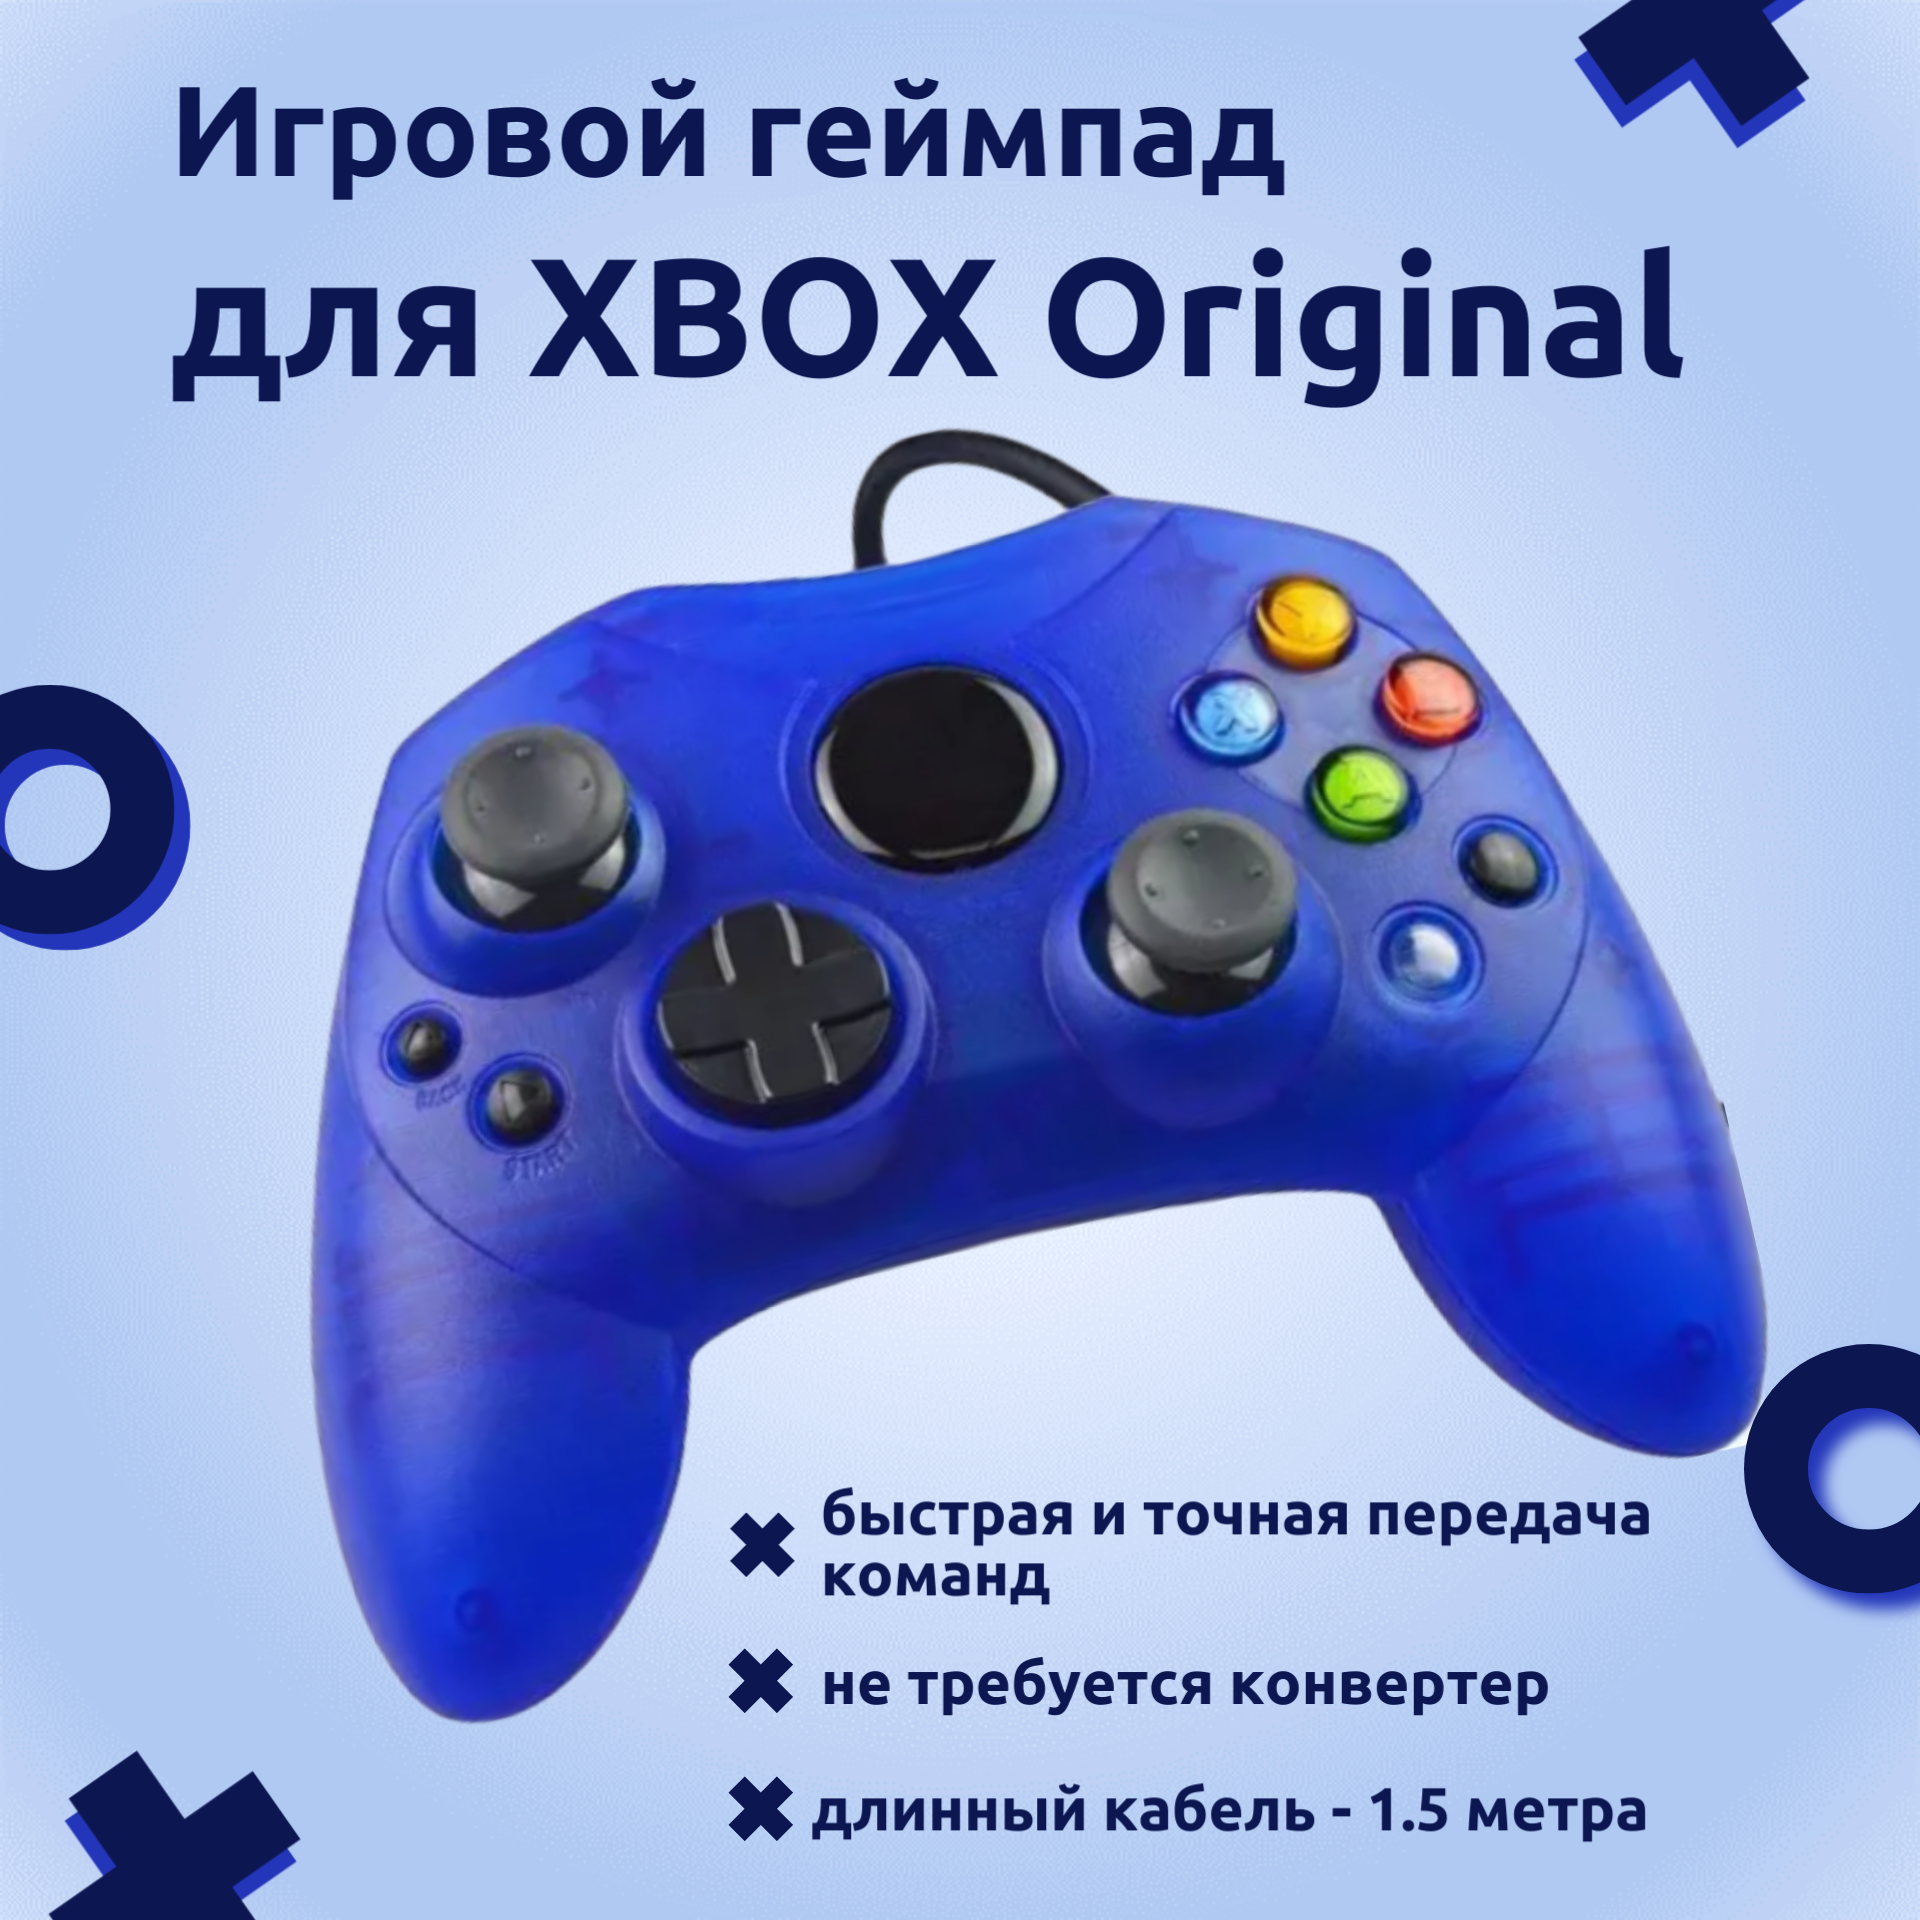 Классический проводной контроллер/геймпад для Xbox Original, синий